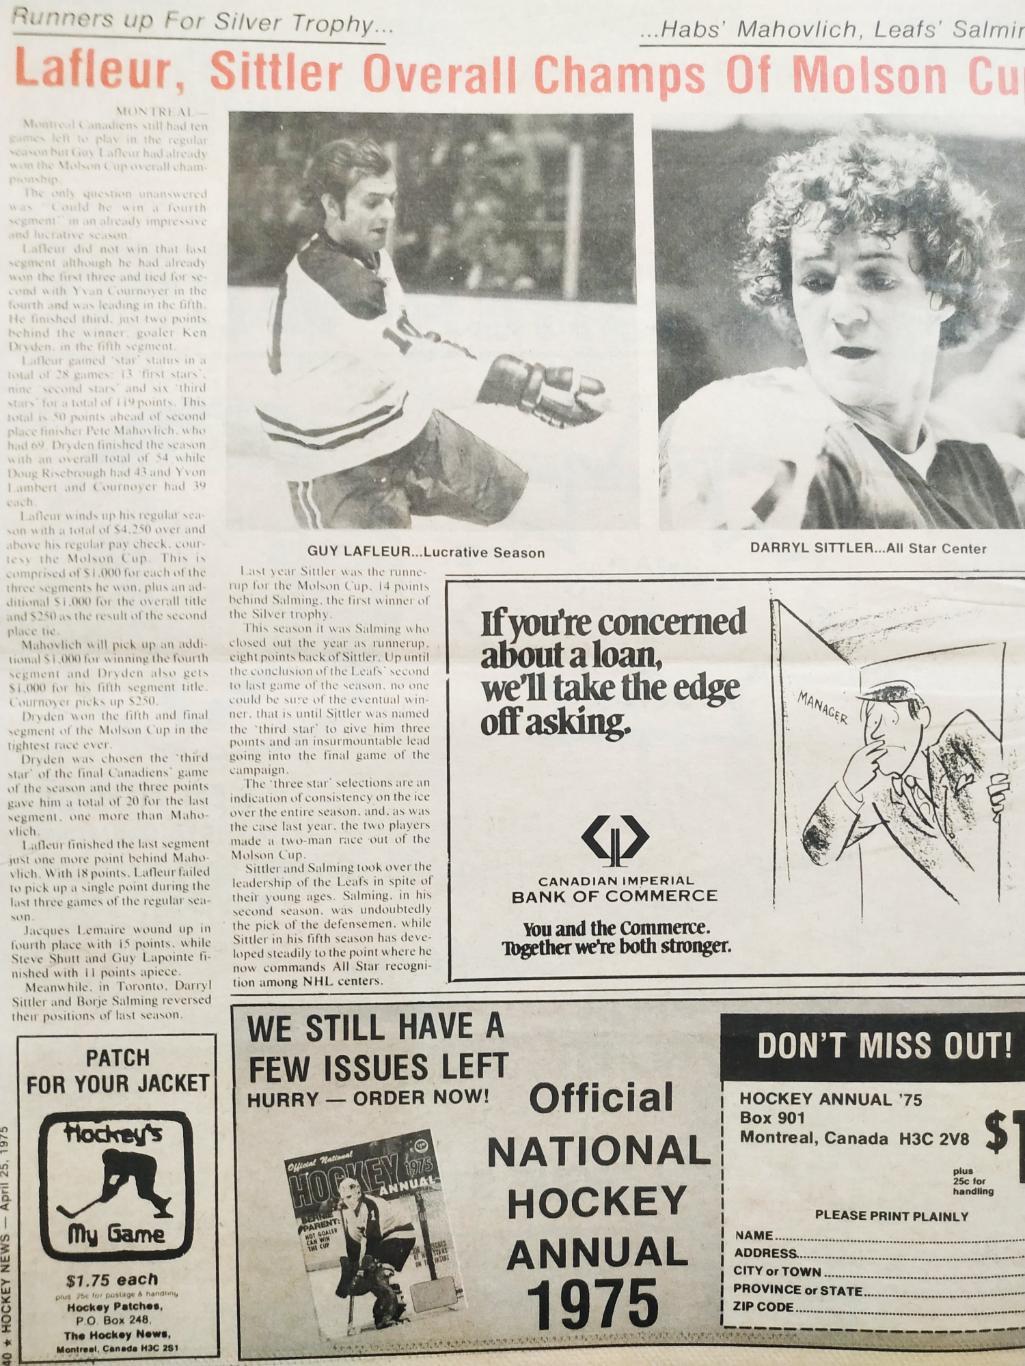 ХОККЕЙ ЖУРНАЛ ЕЖЕНЕДЕЛЬНИК НХЛ НОВОСТИ ХОККЕЯ APR.25 1975 NHL THE HOCKEY NEWS 7